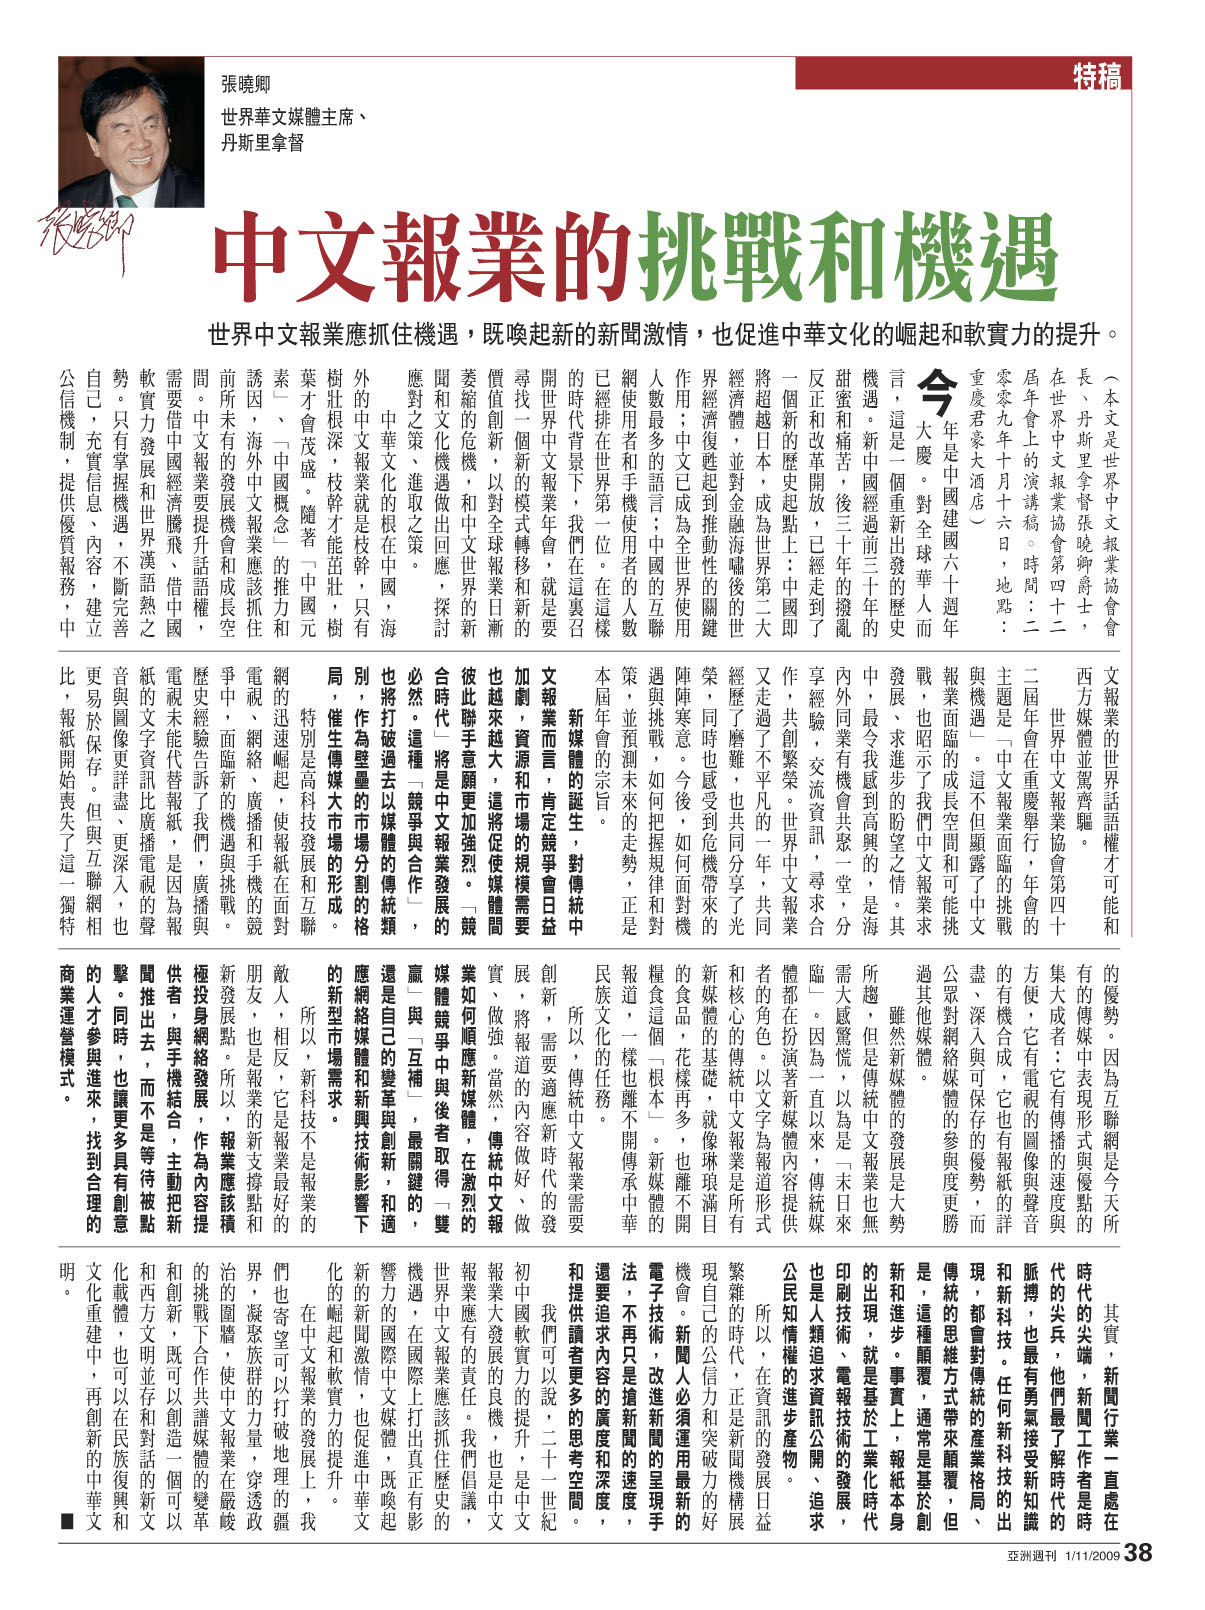 【香港】中文报业的挑战和机遇